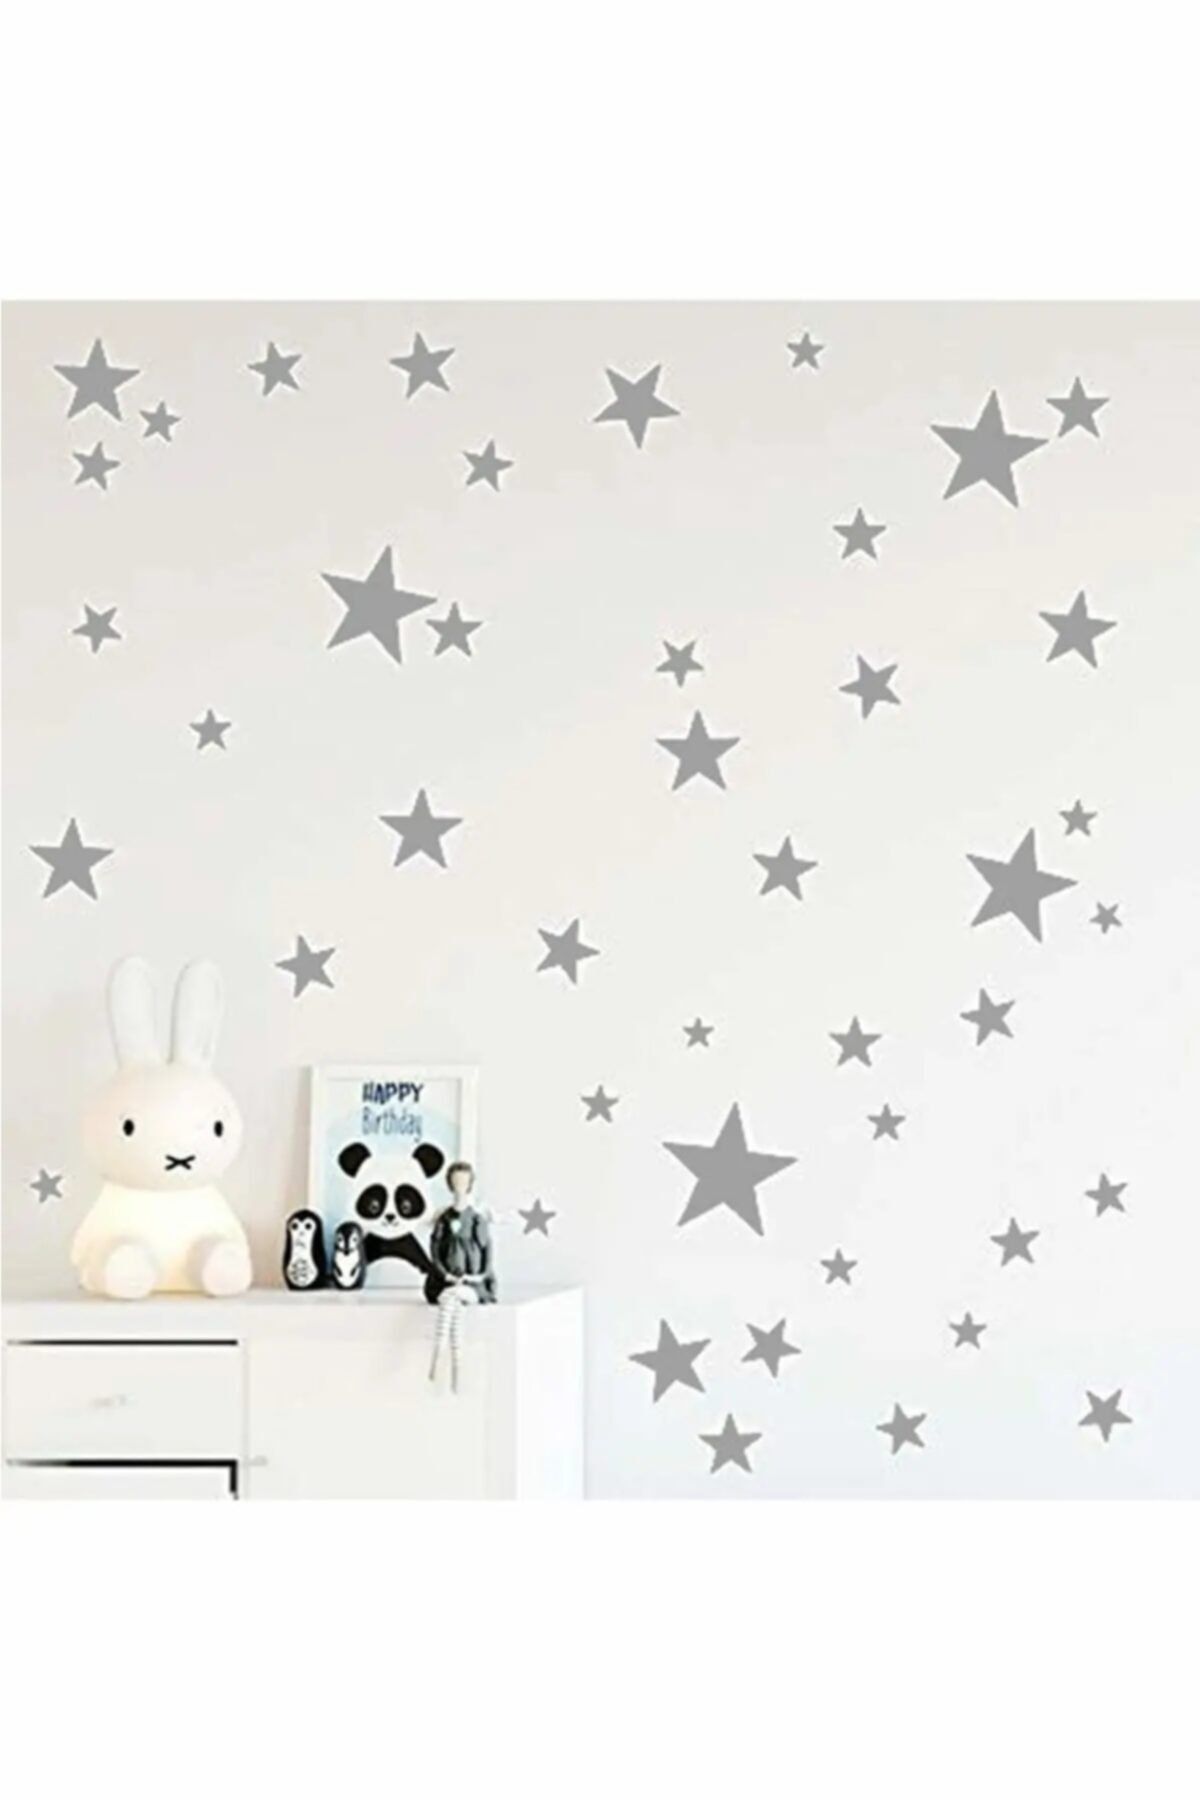 Walldeco Gri Yıldız Duvar Sticker 3-4-5 cm 144 adet